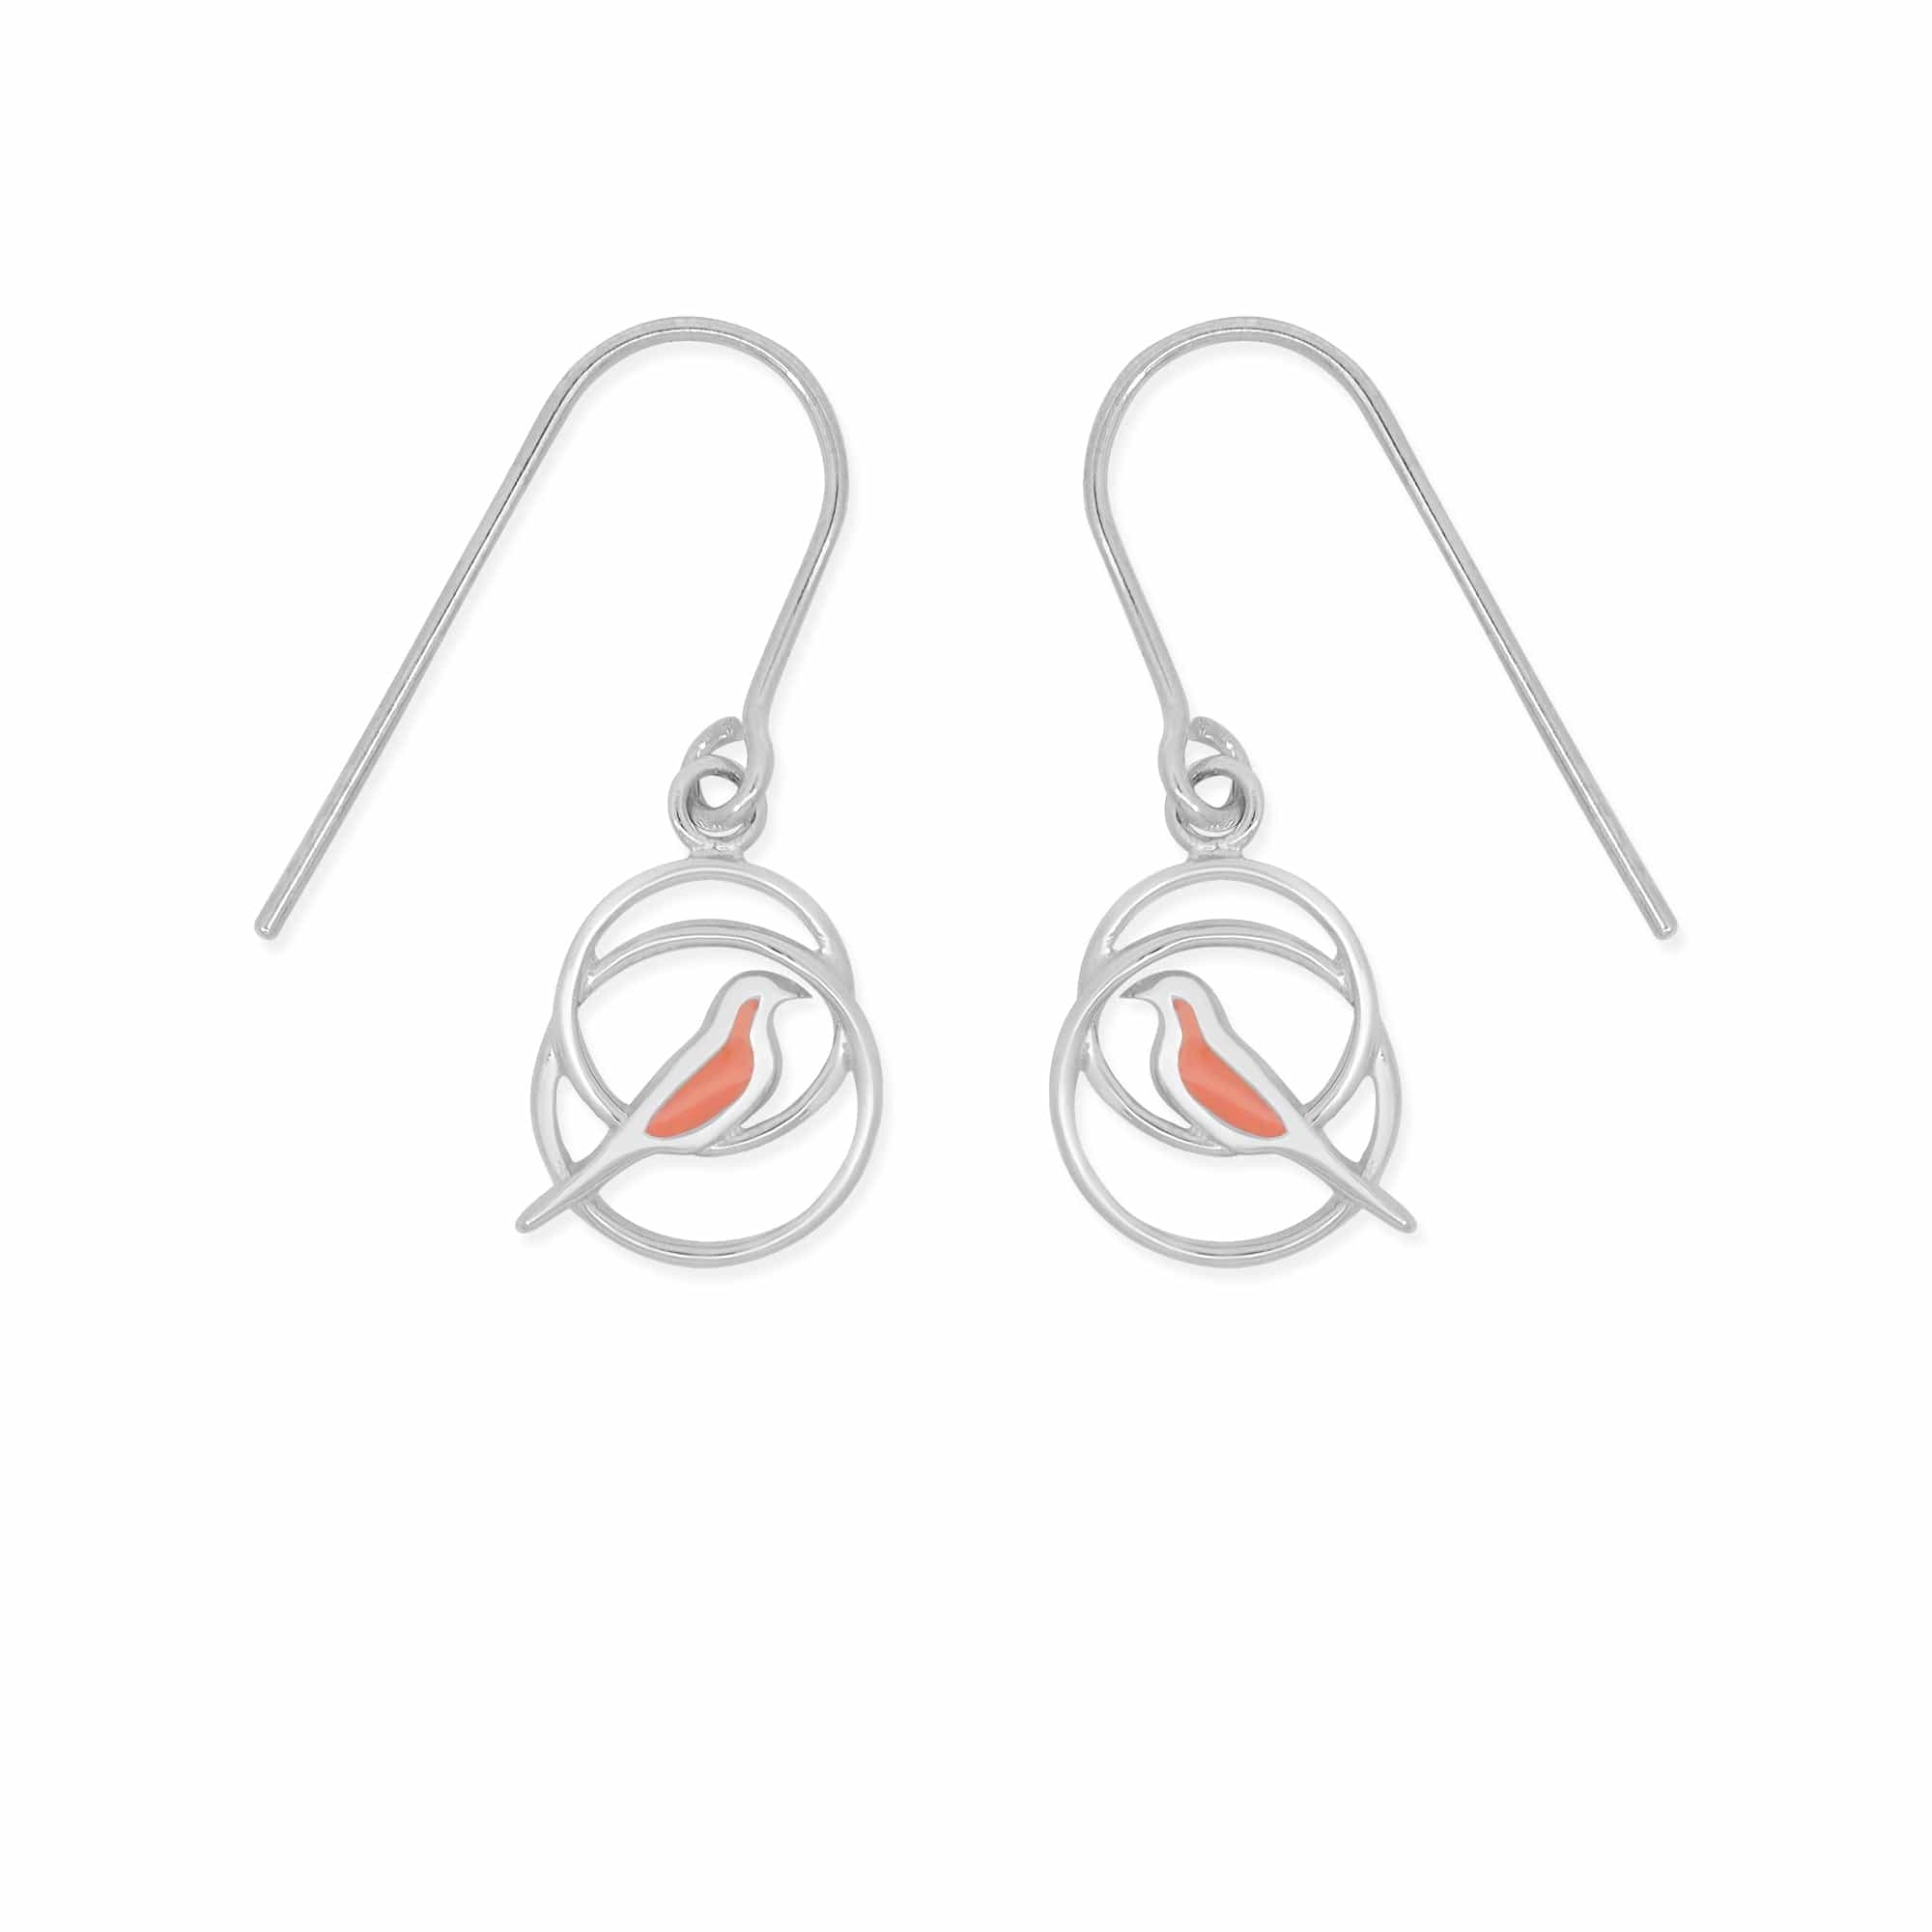 Boma Jewelry Earrings Orange Bird Enamel Drop Circle Earrings